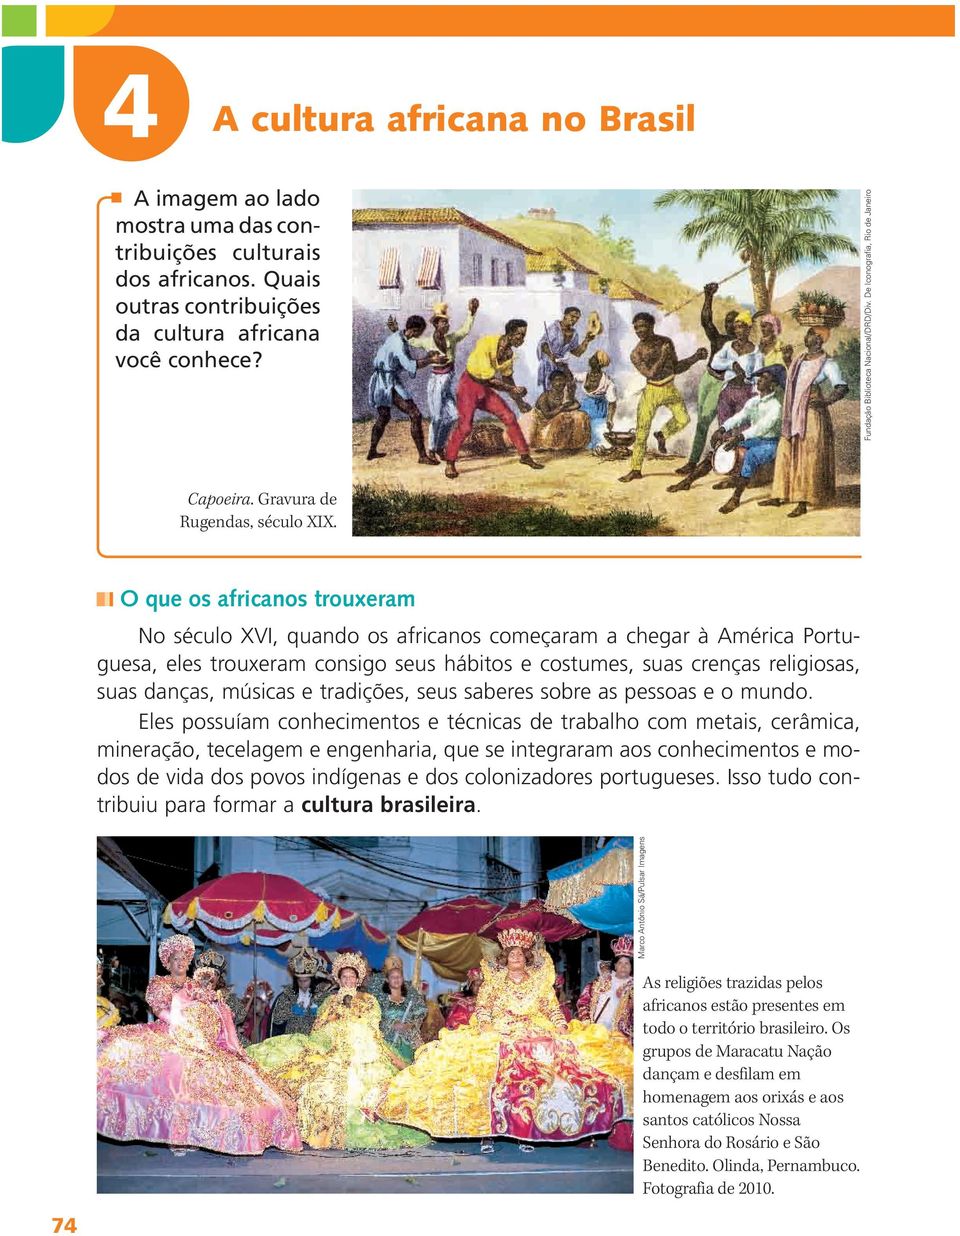 O que os africanos trouxeram No século XVI, quando os africanos começaram a chegar à América Portuguesa, eles trouxeram consigo seus hábitos e costumes, suas crenças religiosas, suas danças, músicas